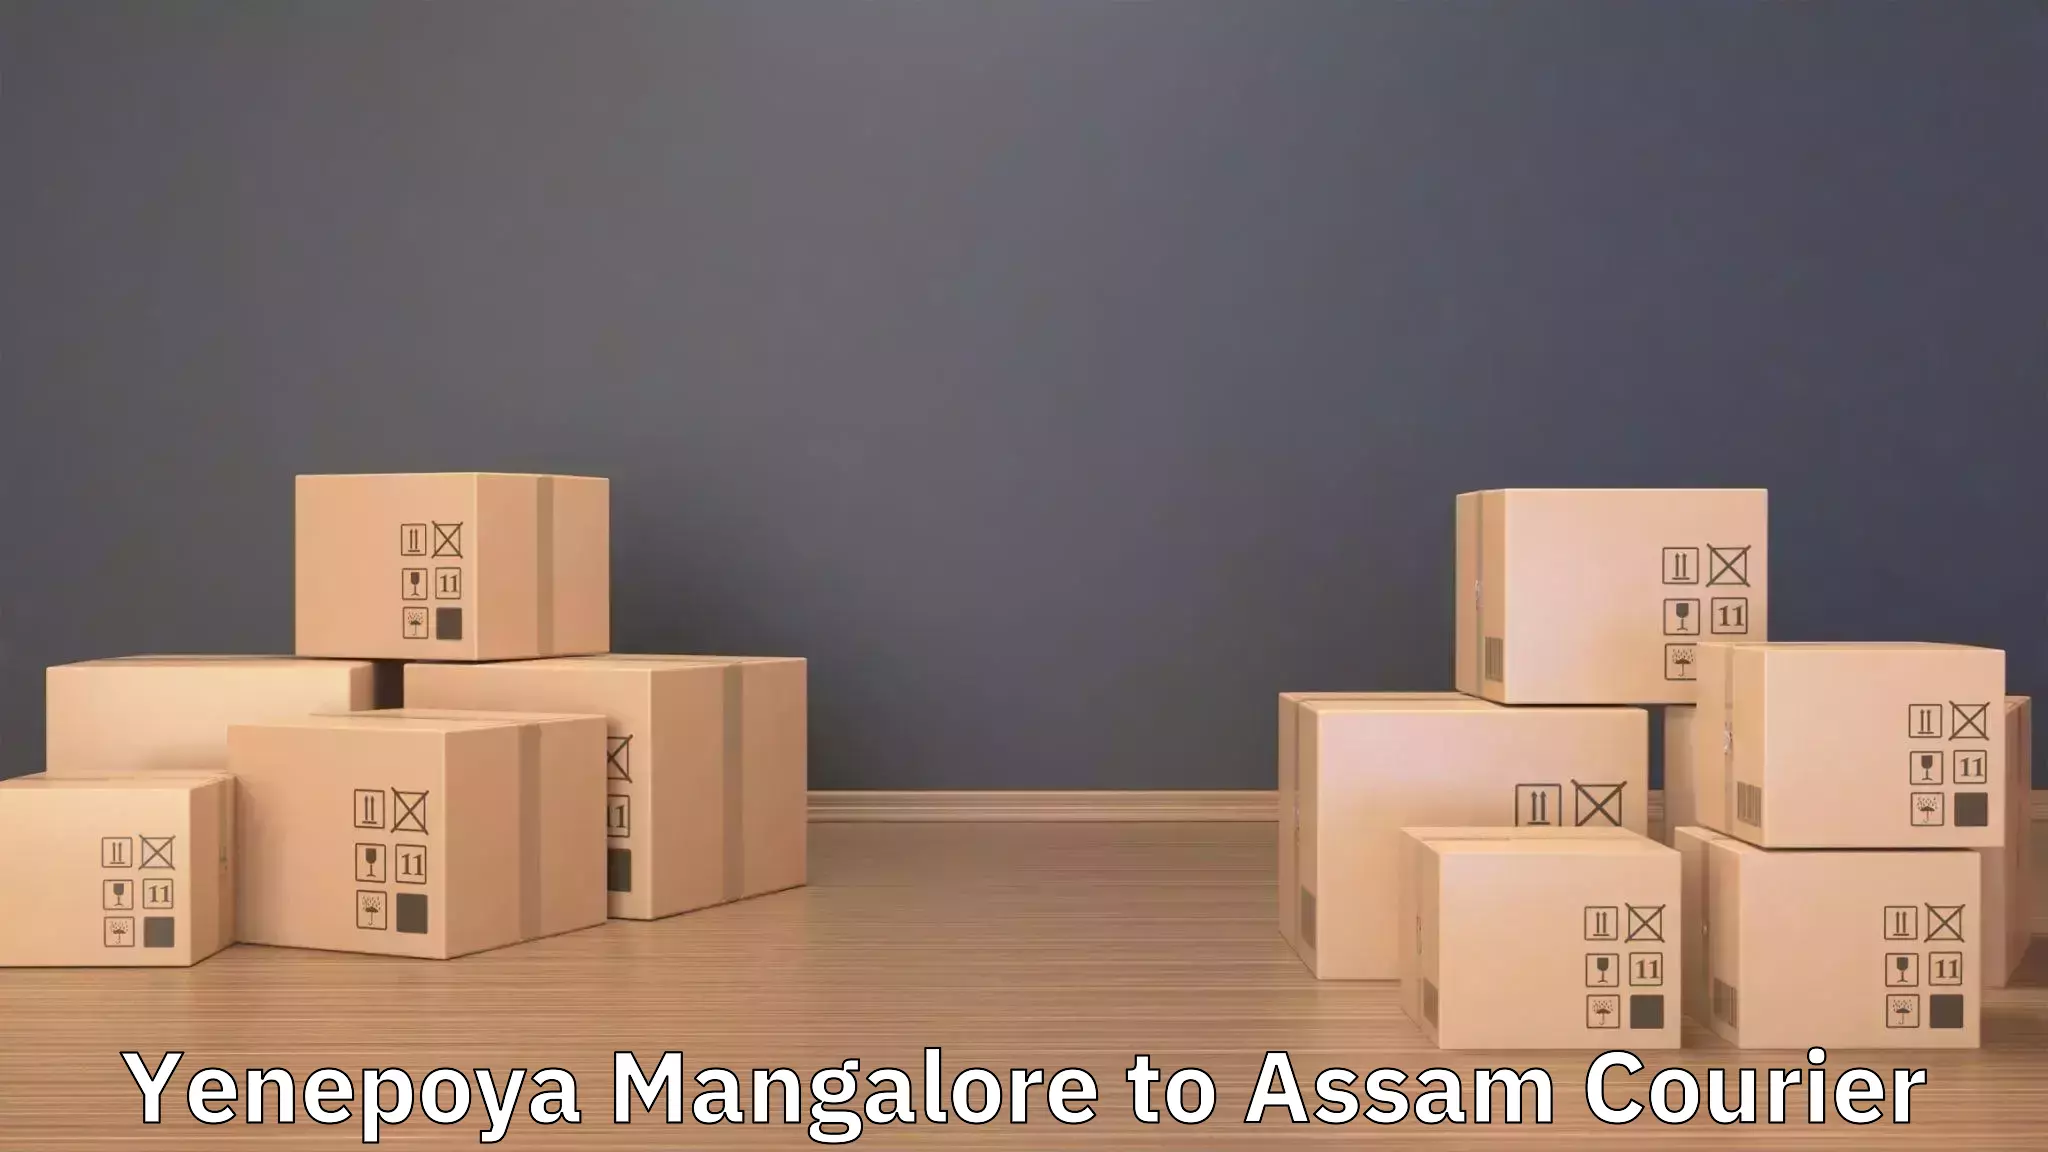 Moving and storage services Yenepoya Mangalore to Badarpur Karimganj